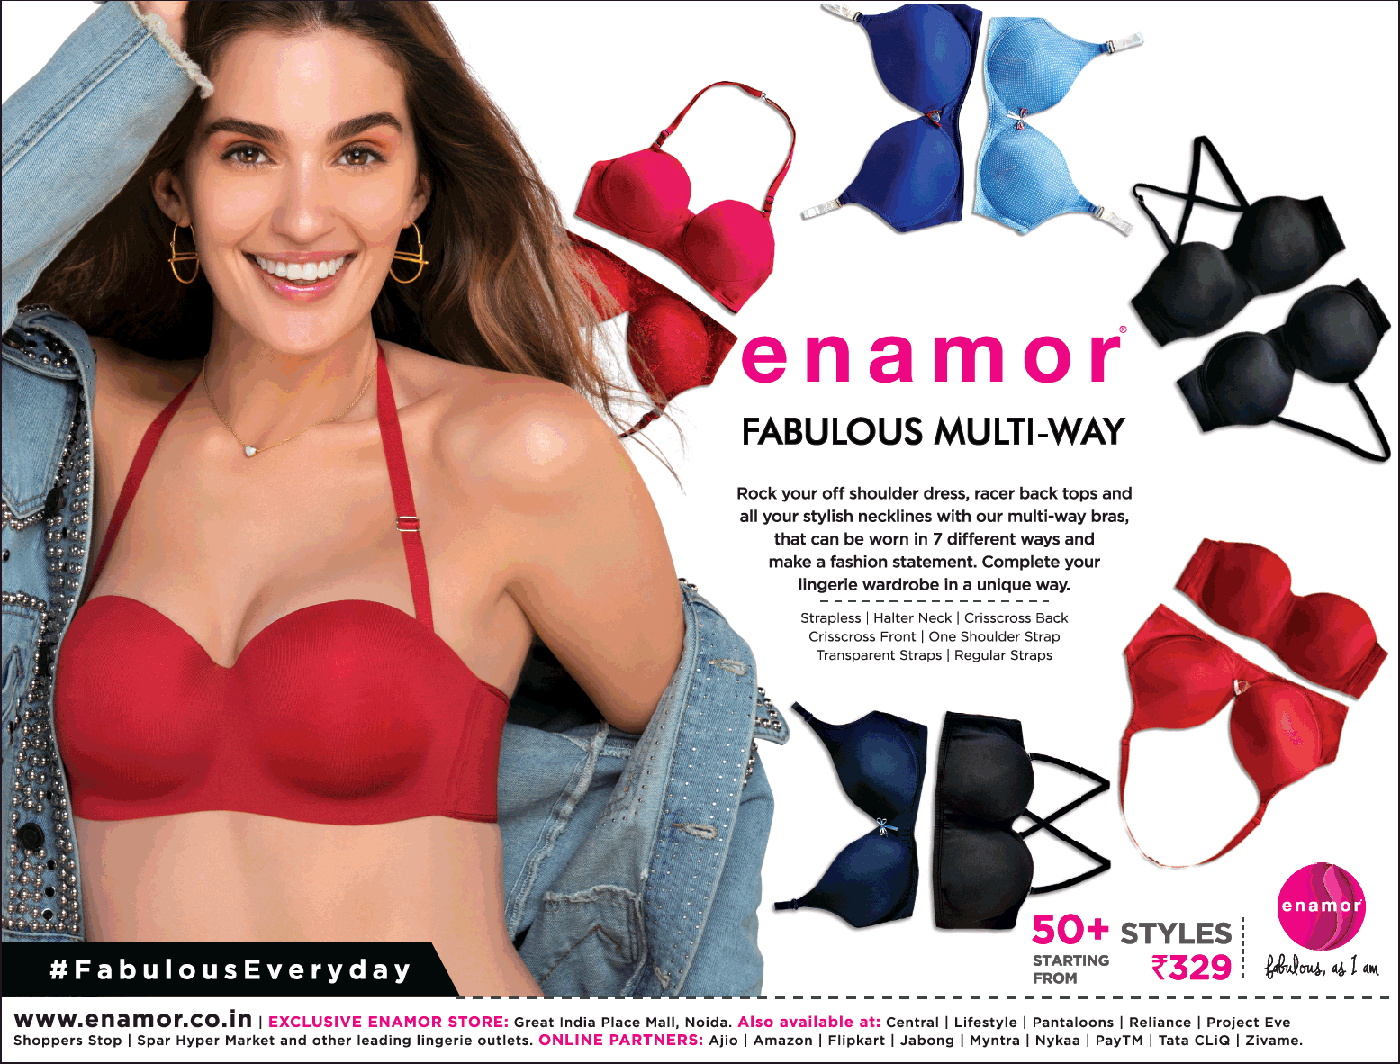 Enamor Innerwear Fabulous Multi Way Ad Delhi Times - Advert Gallery